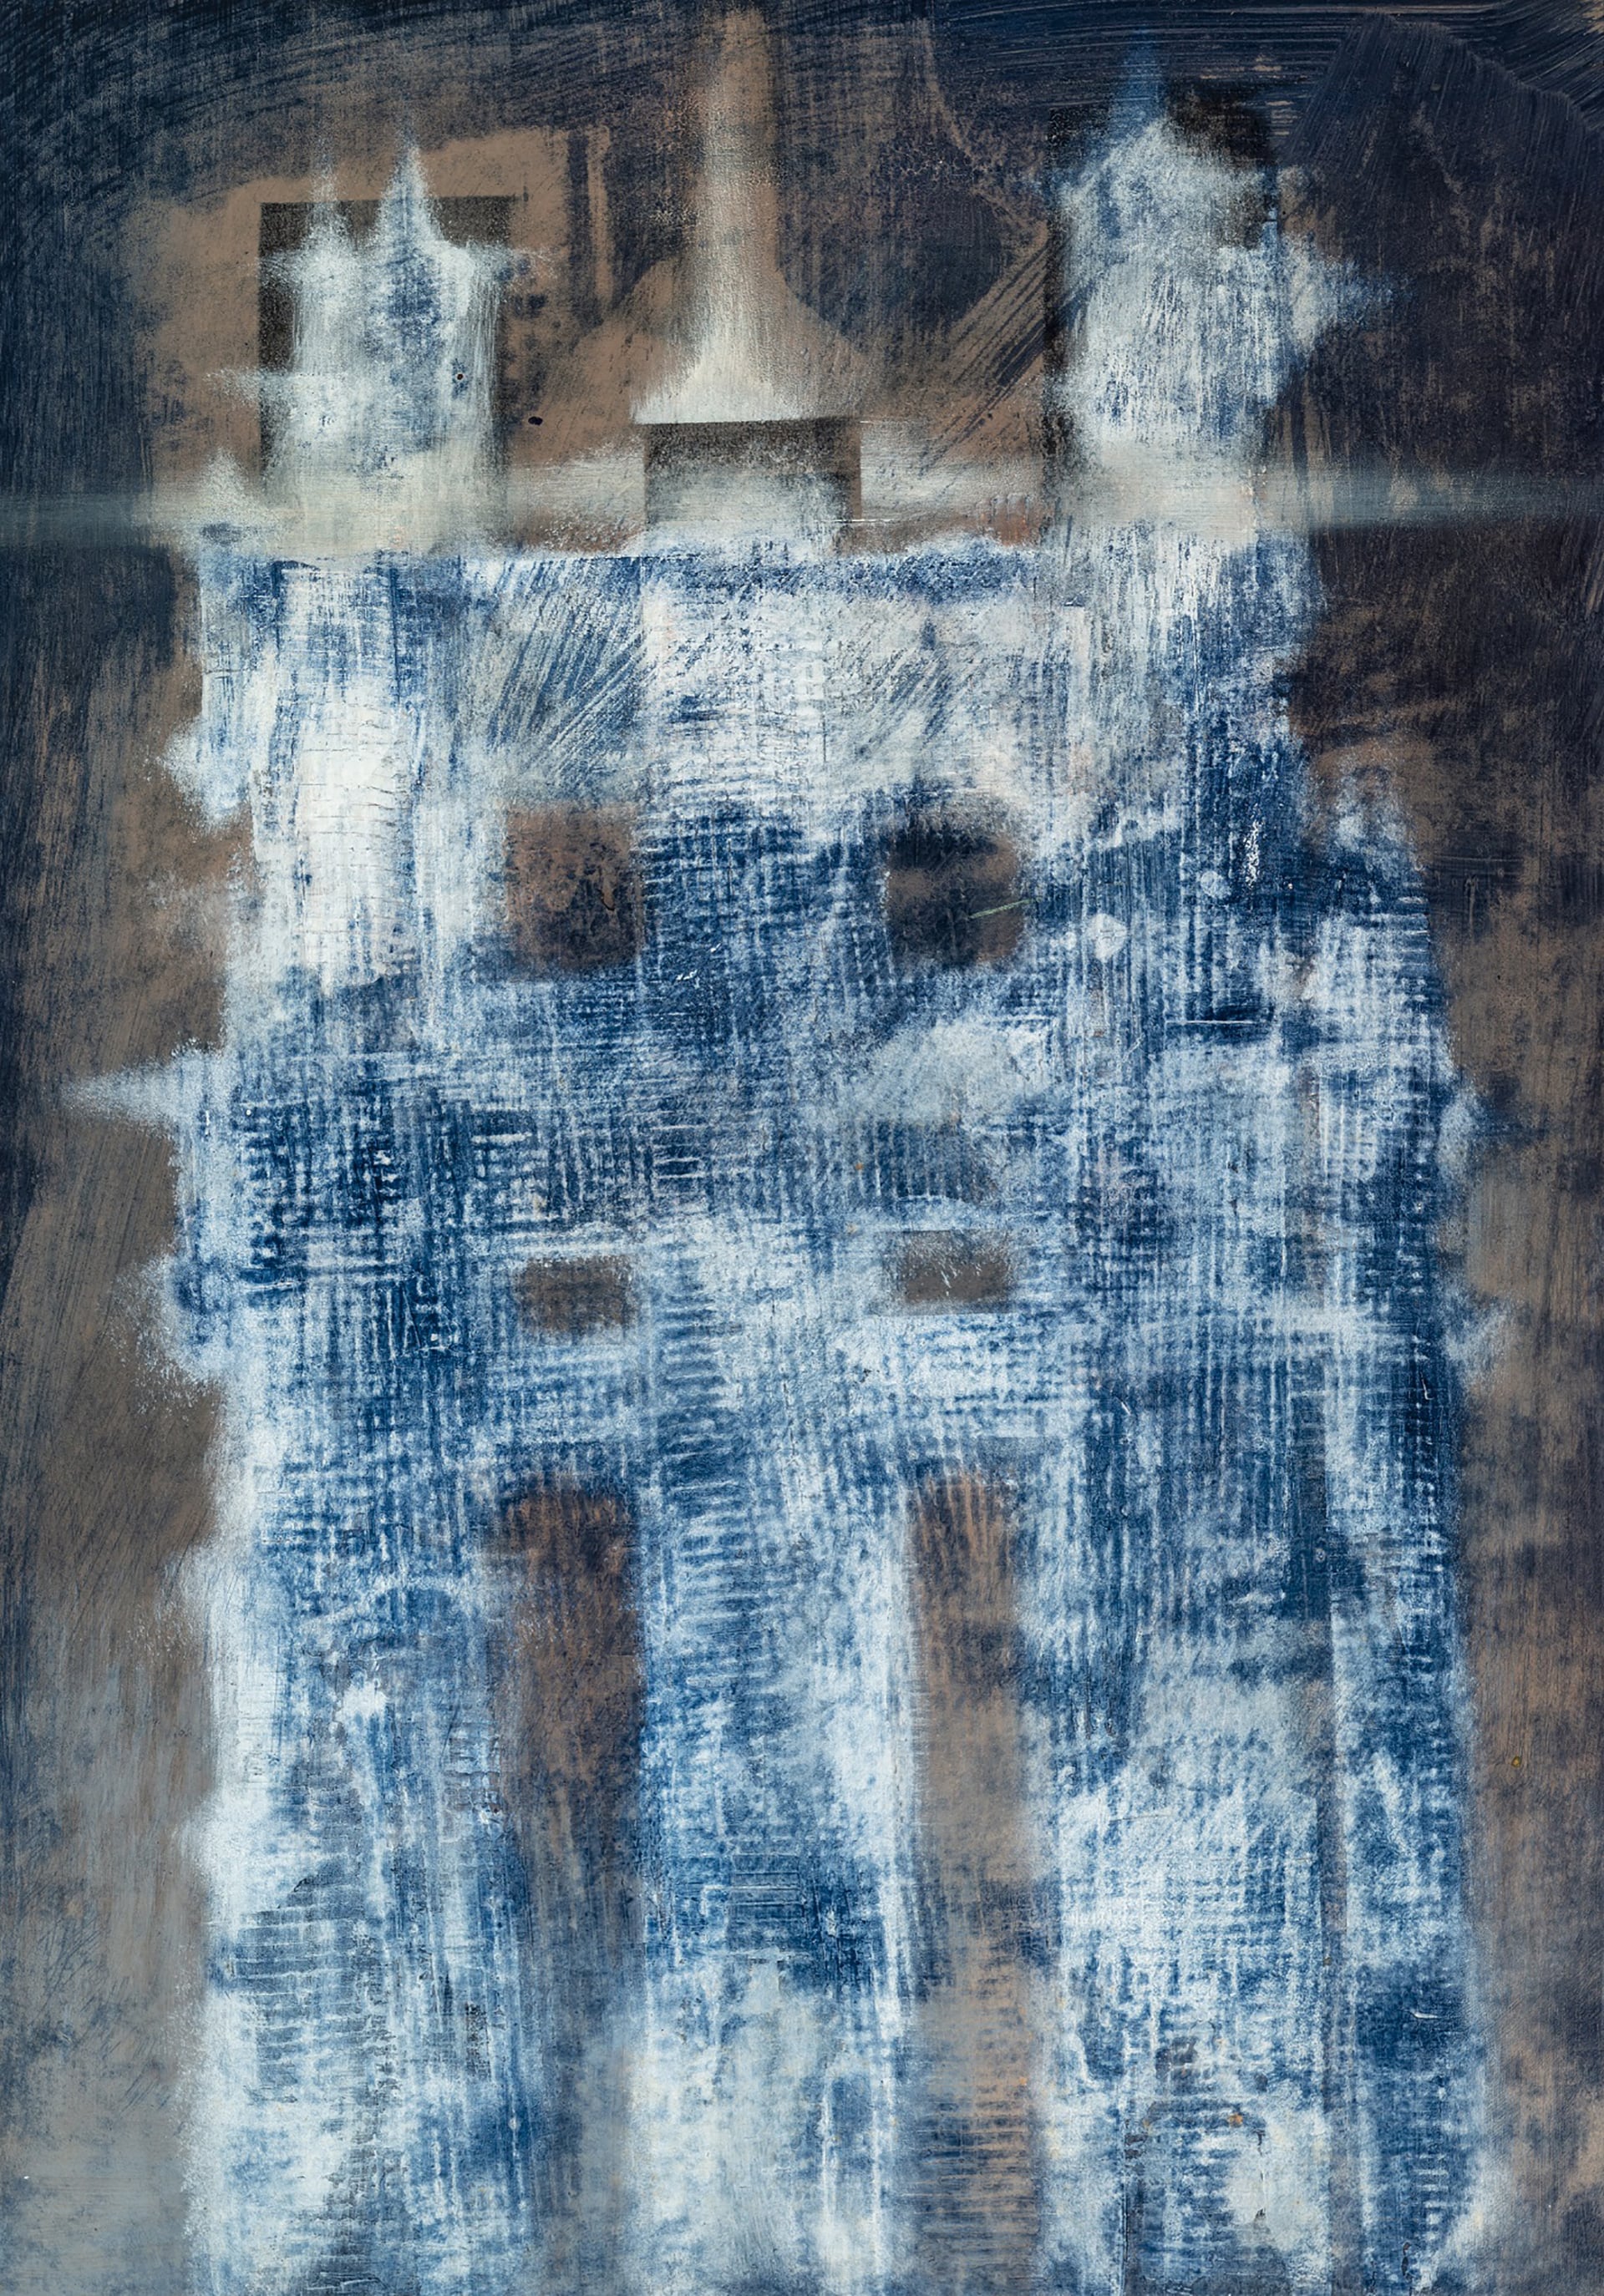 Luigi Pericle. Senza titolo, senza data. Tecnica mista su masonite, 42 x 30 cm. Collezione privata